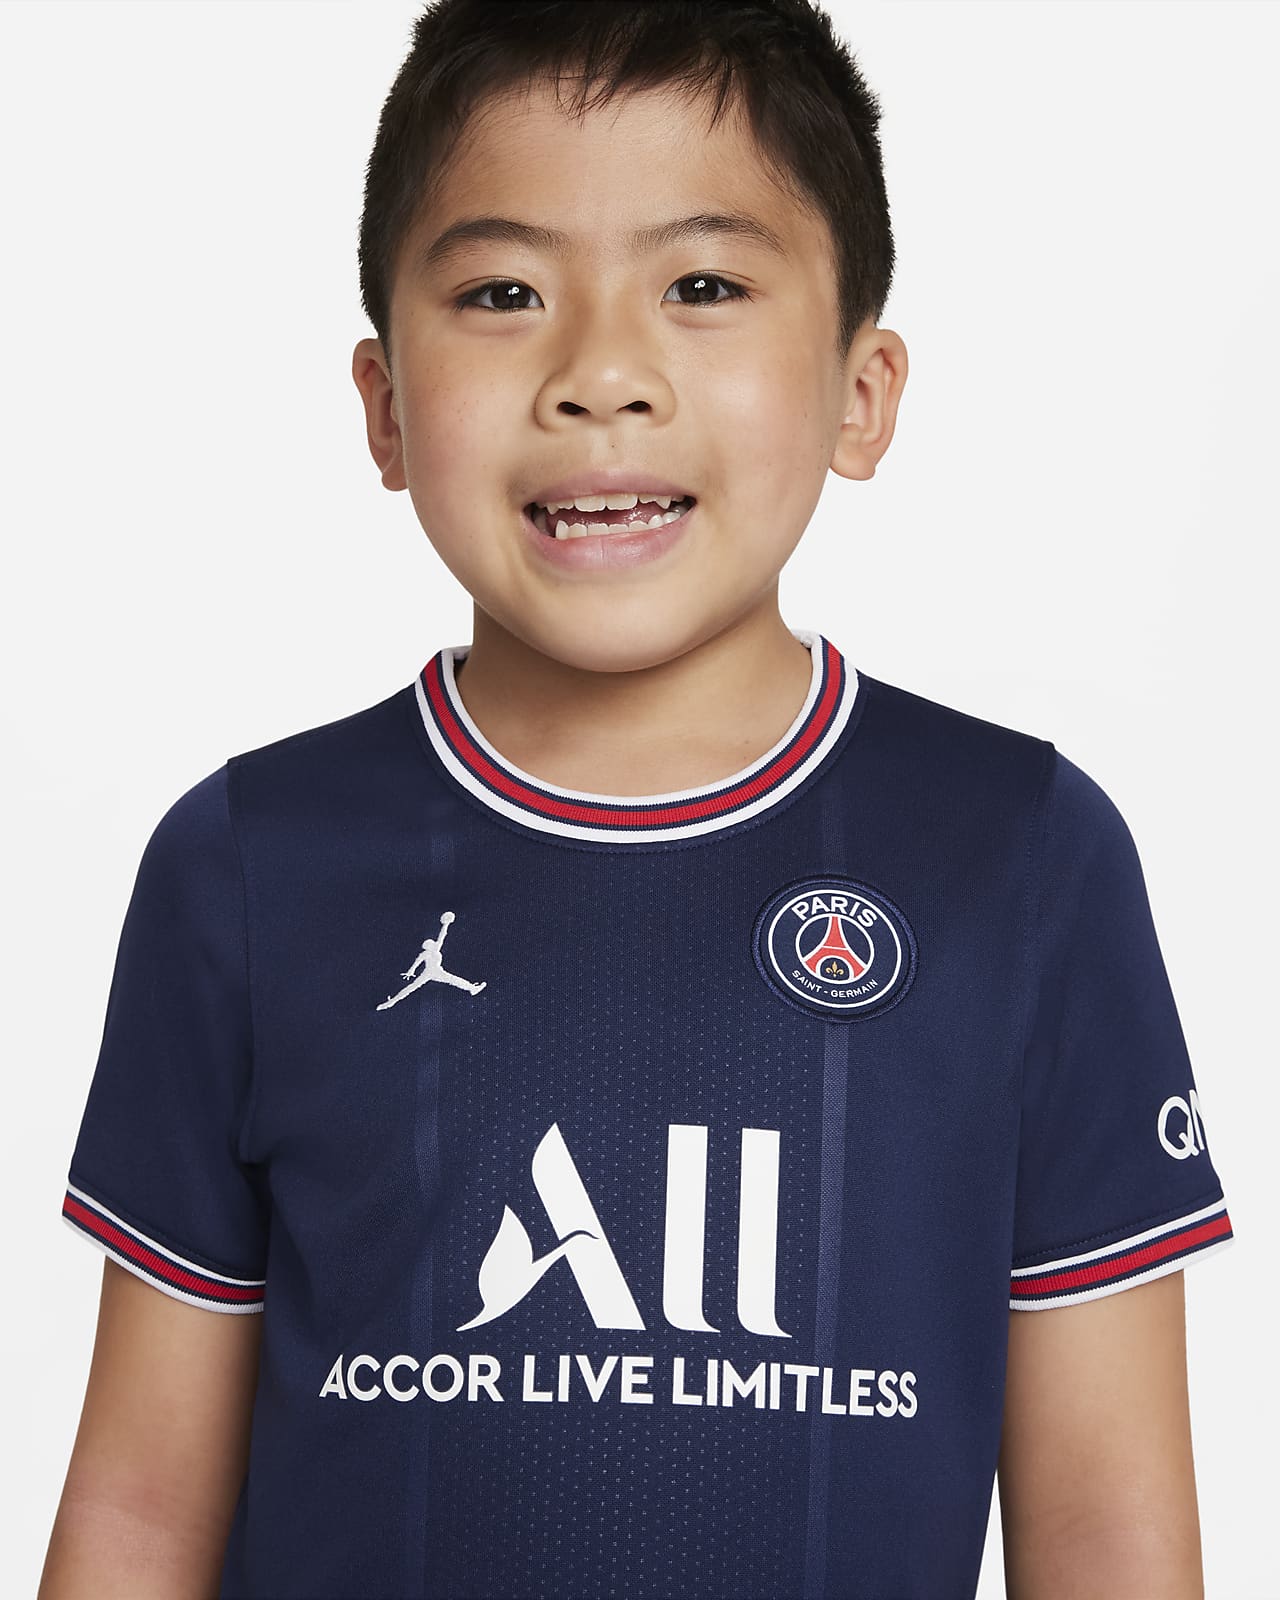 Saint-Germain 2021/22 Home-fodboldsæt mindre børn. DK